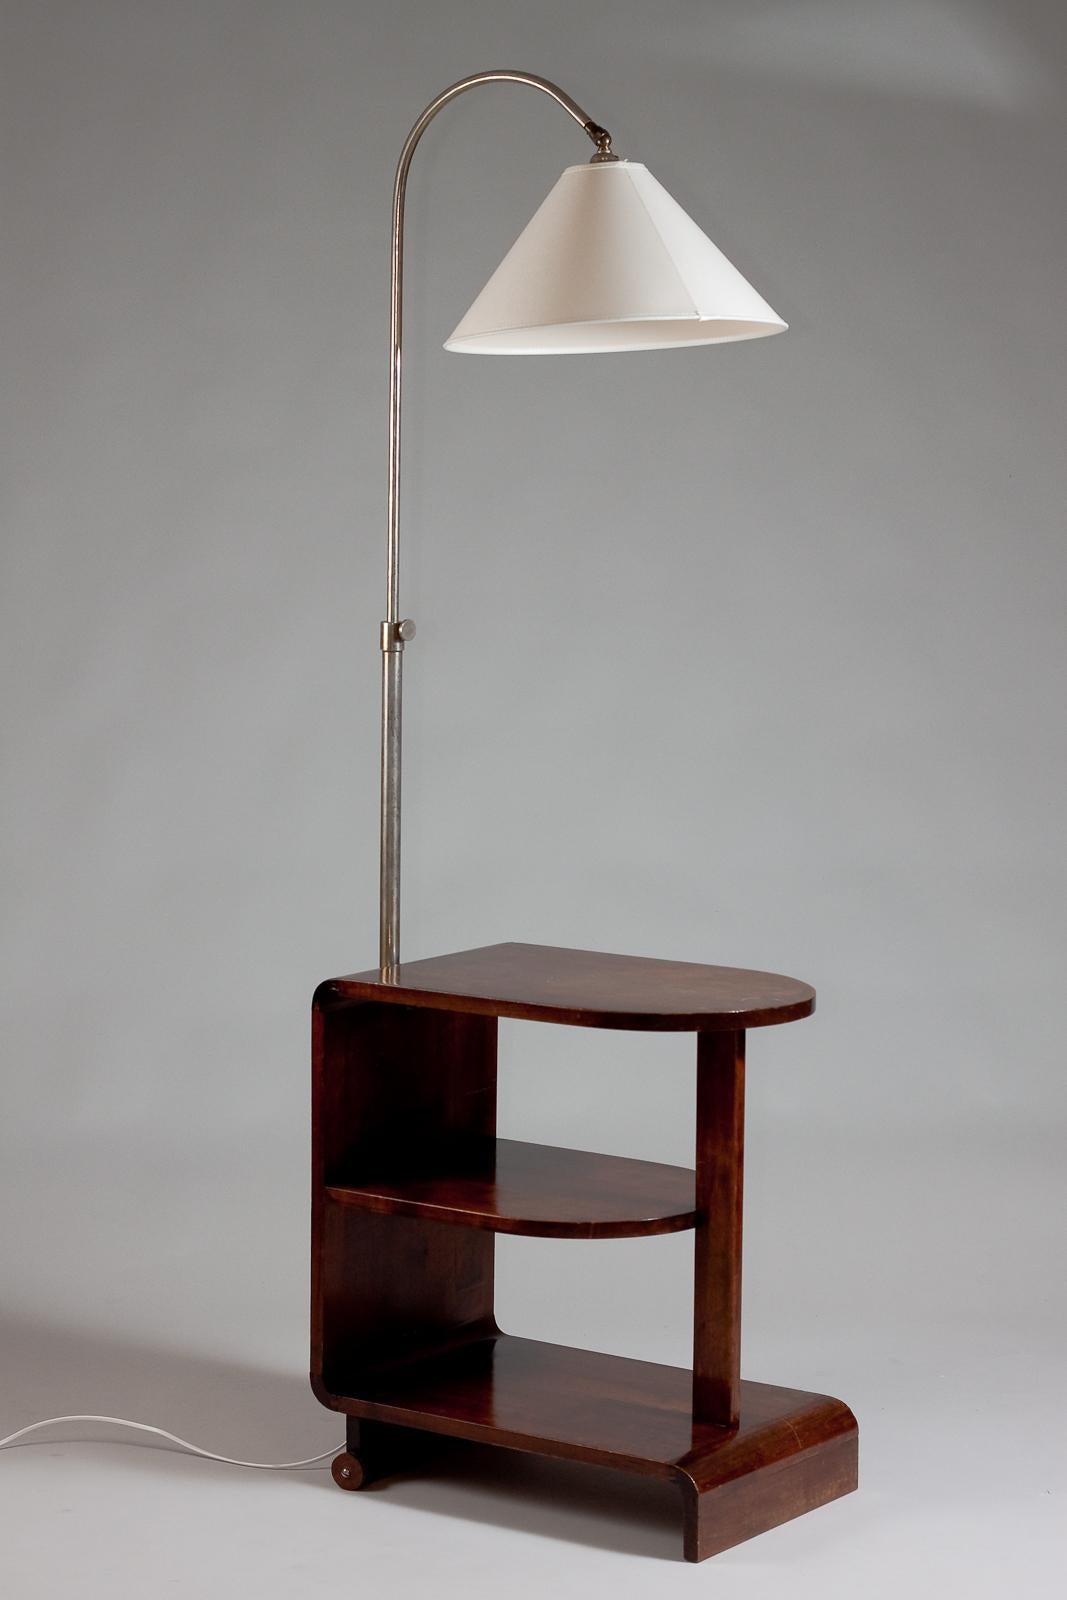 Te presentamos la mesa auxiliar Maija Heikinheimo Apu, una impresionante pieza vintage que destila encanto de los años 30. Esta elegante mesa se ha modificado para incluir una lámpara incorporada y posavasos, lo que la hace a la vez funcional y